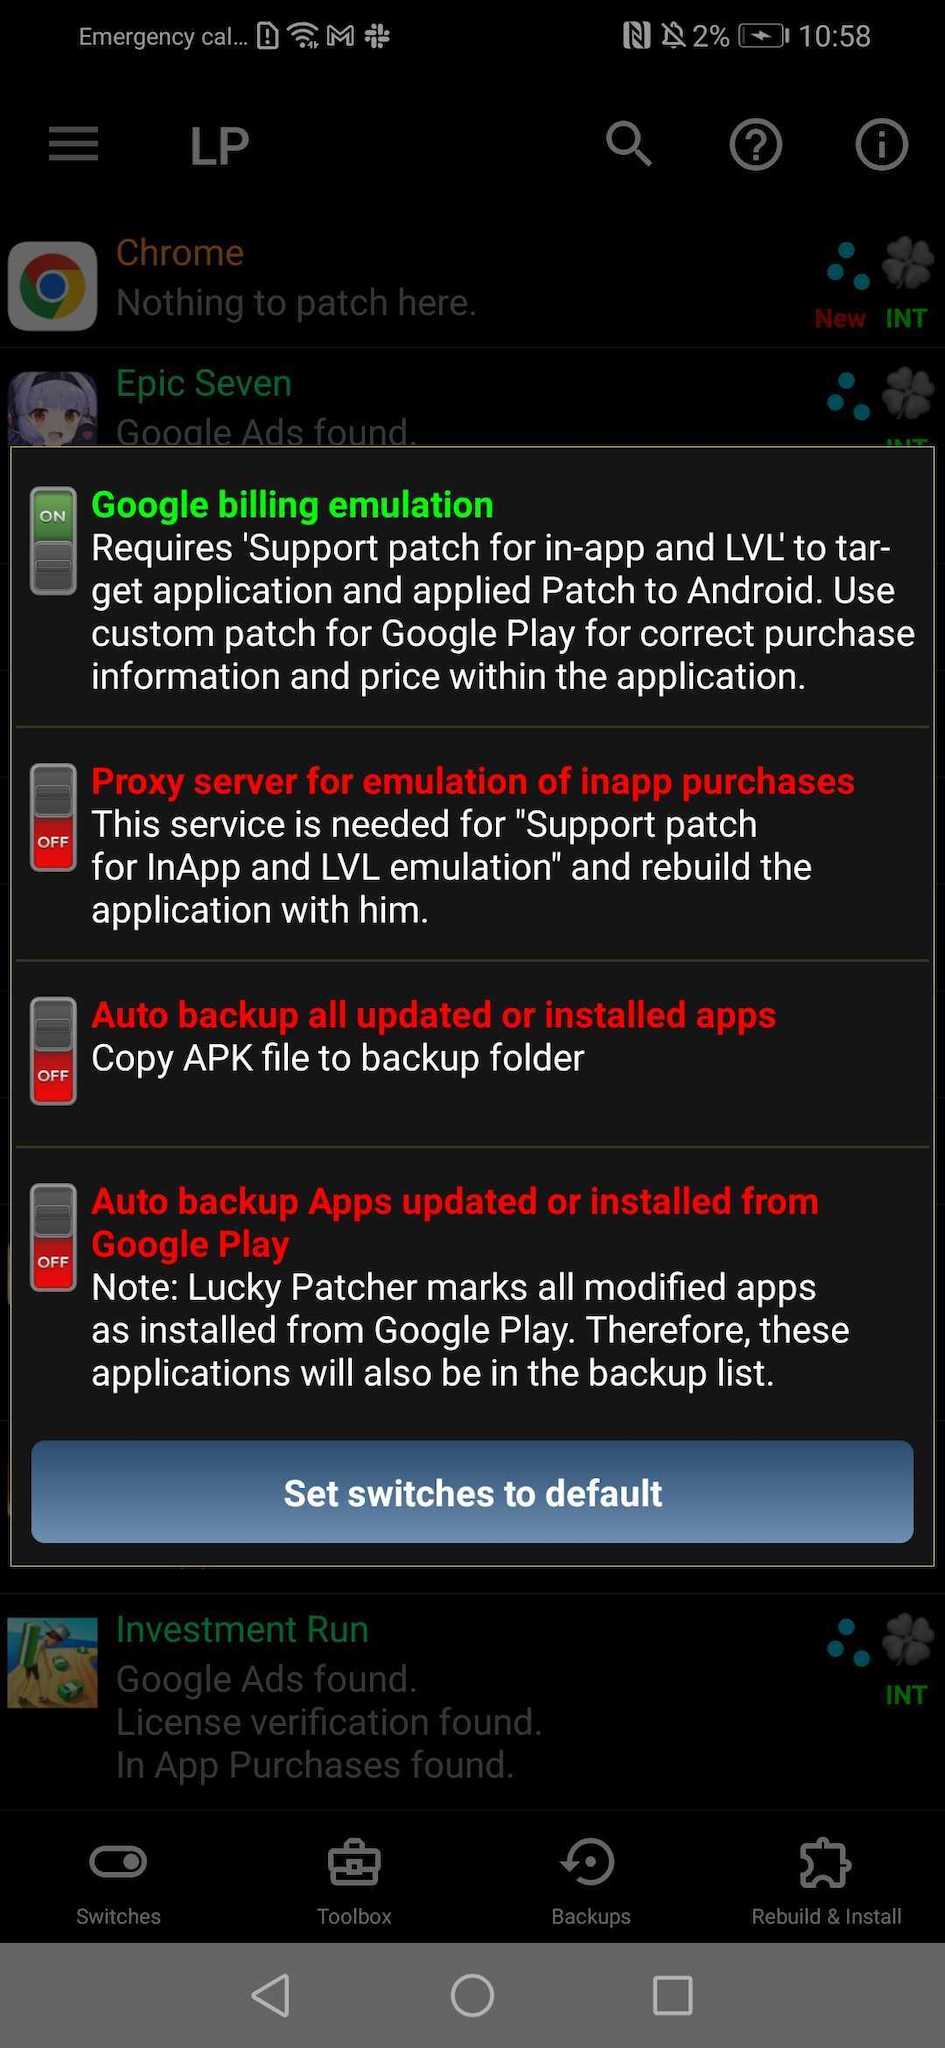 Baixe o Lucky Patcher MOD APK v10.8.1 para Android